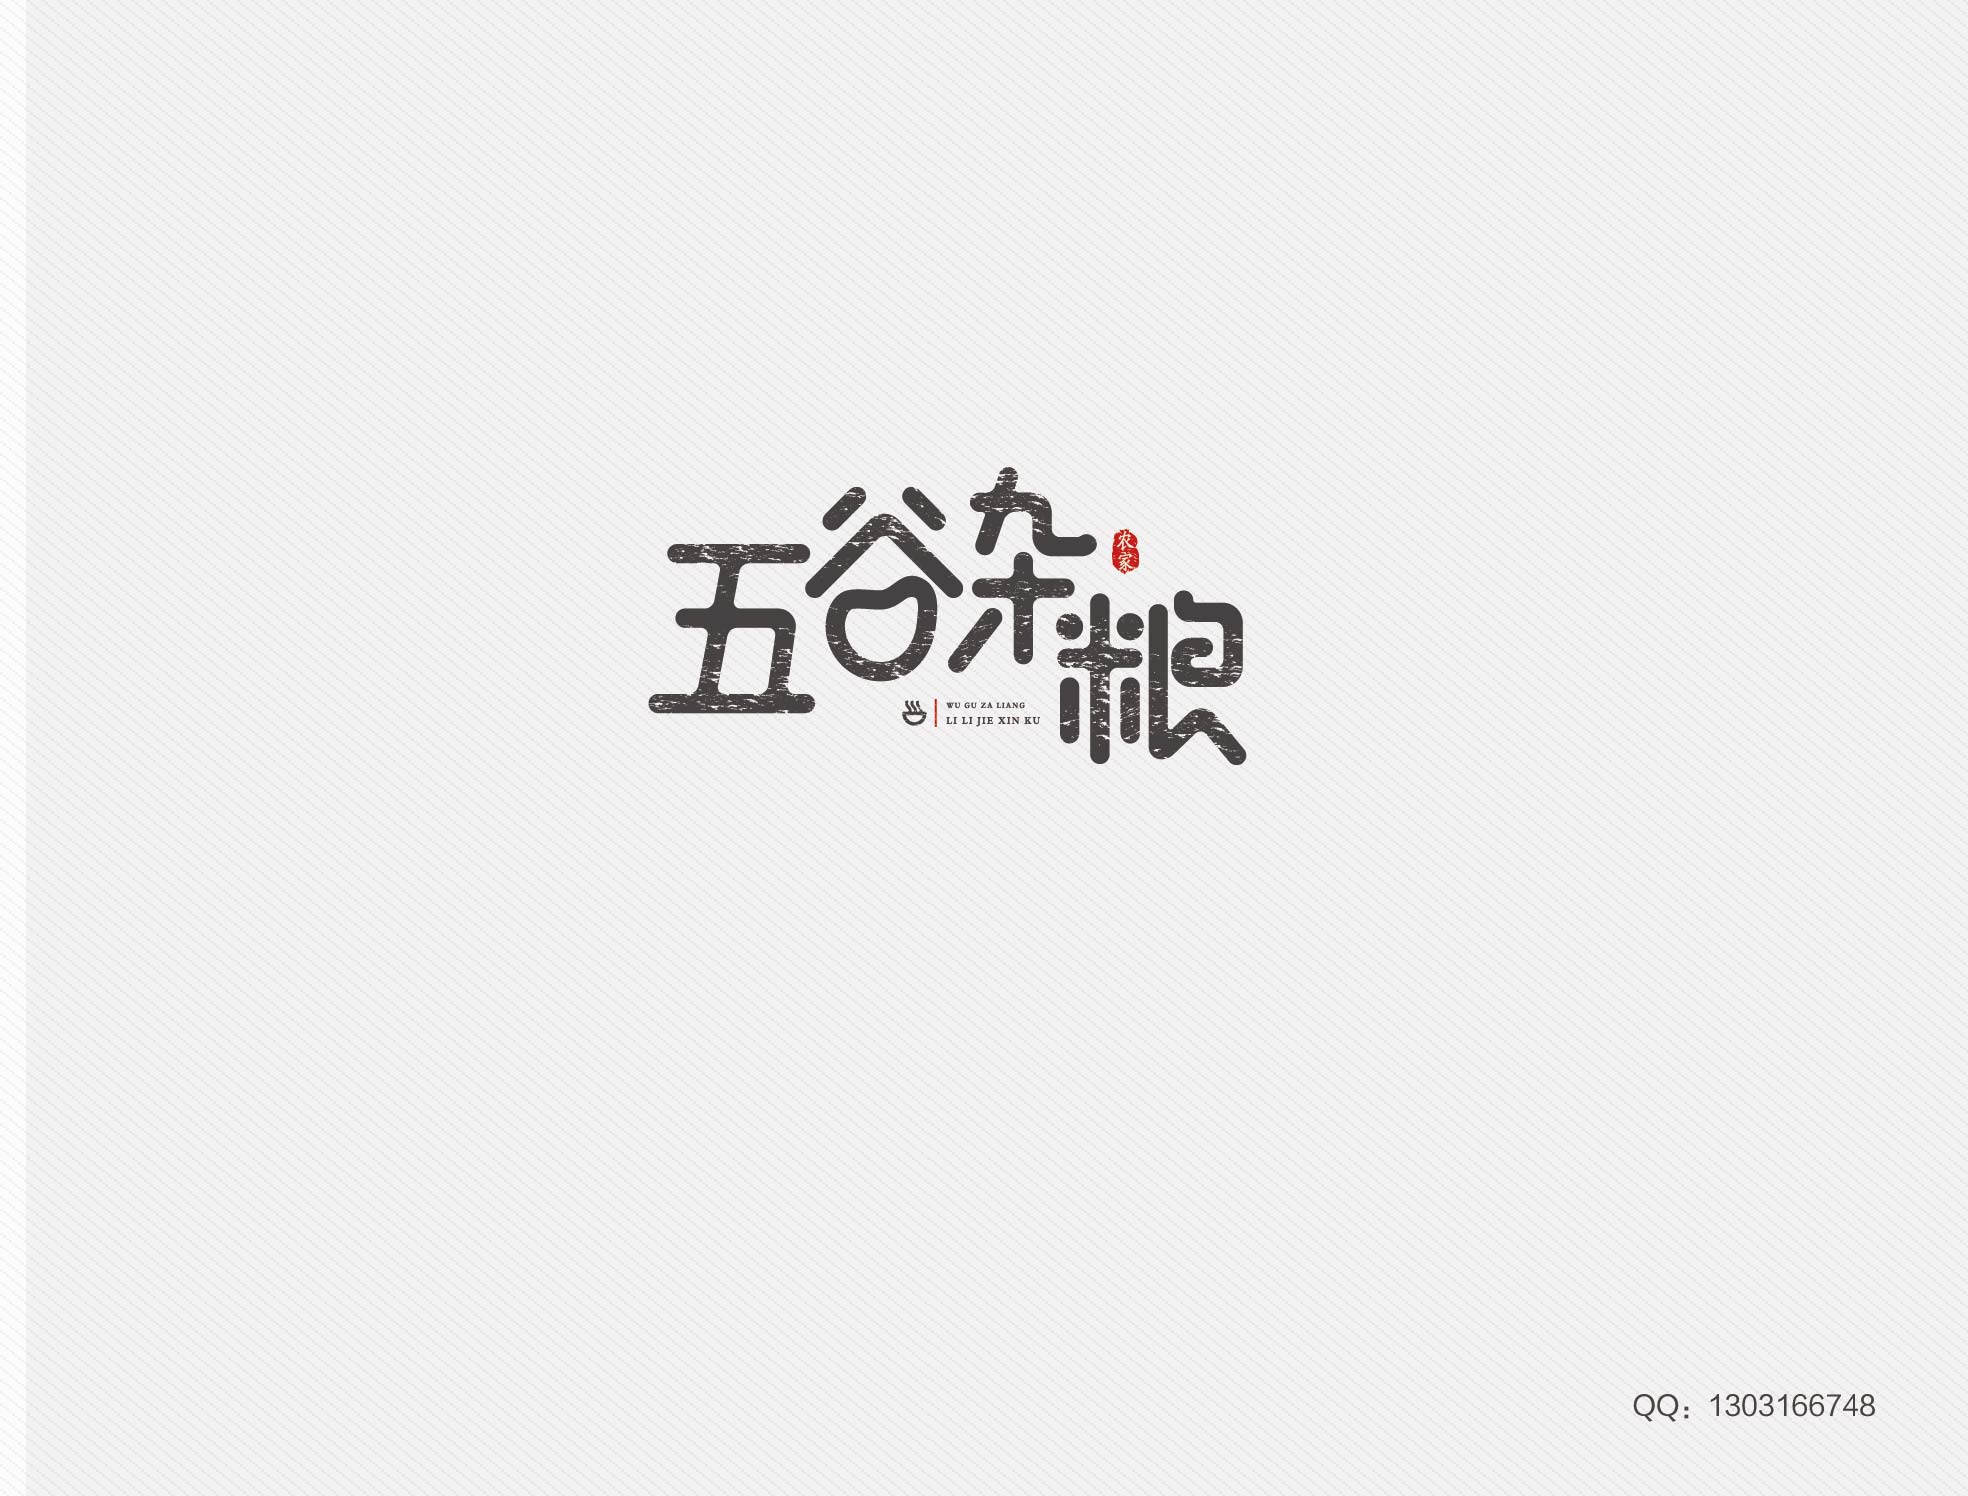 创意素材:中文变形字体LOGO设计欣赏